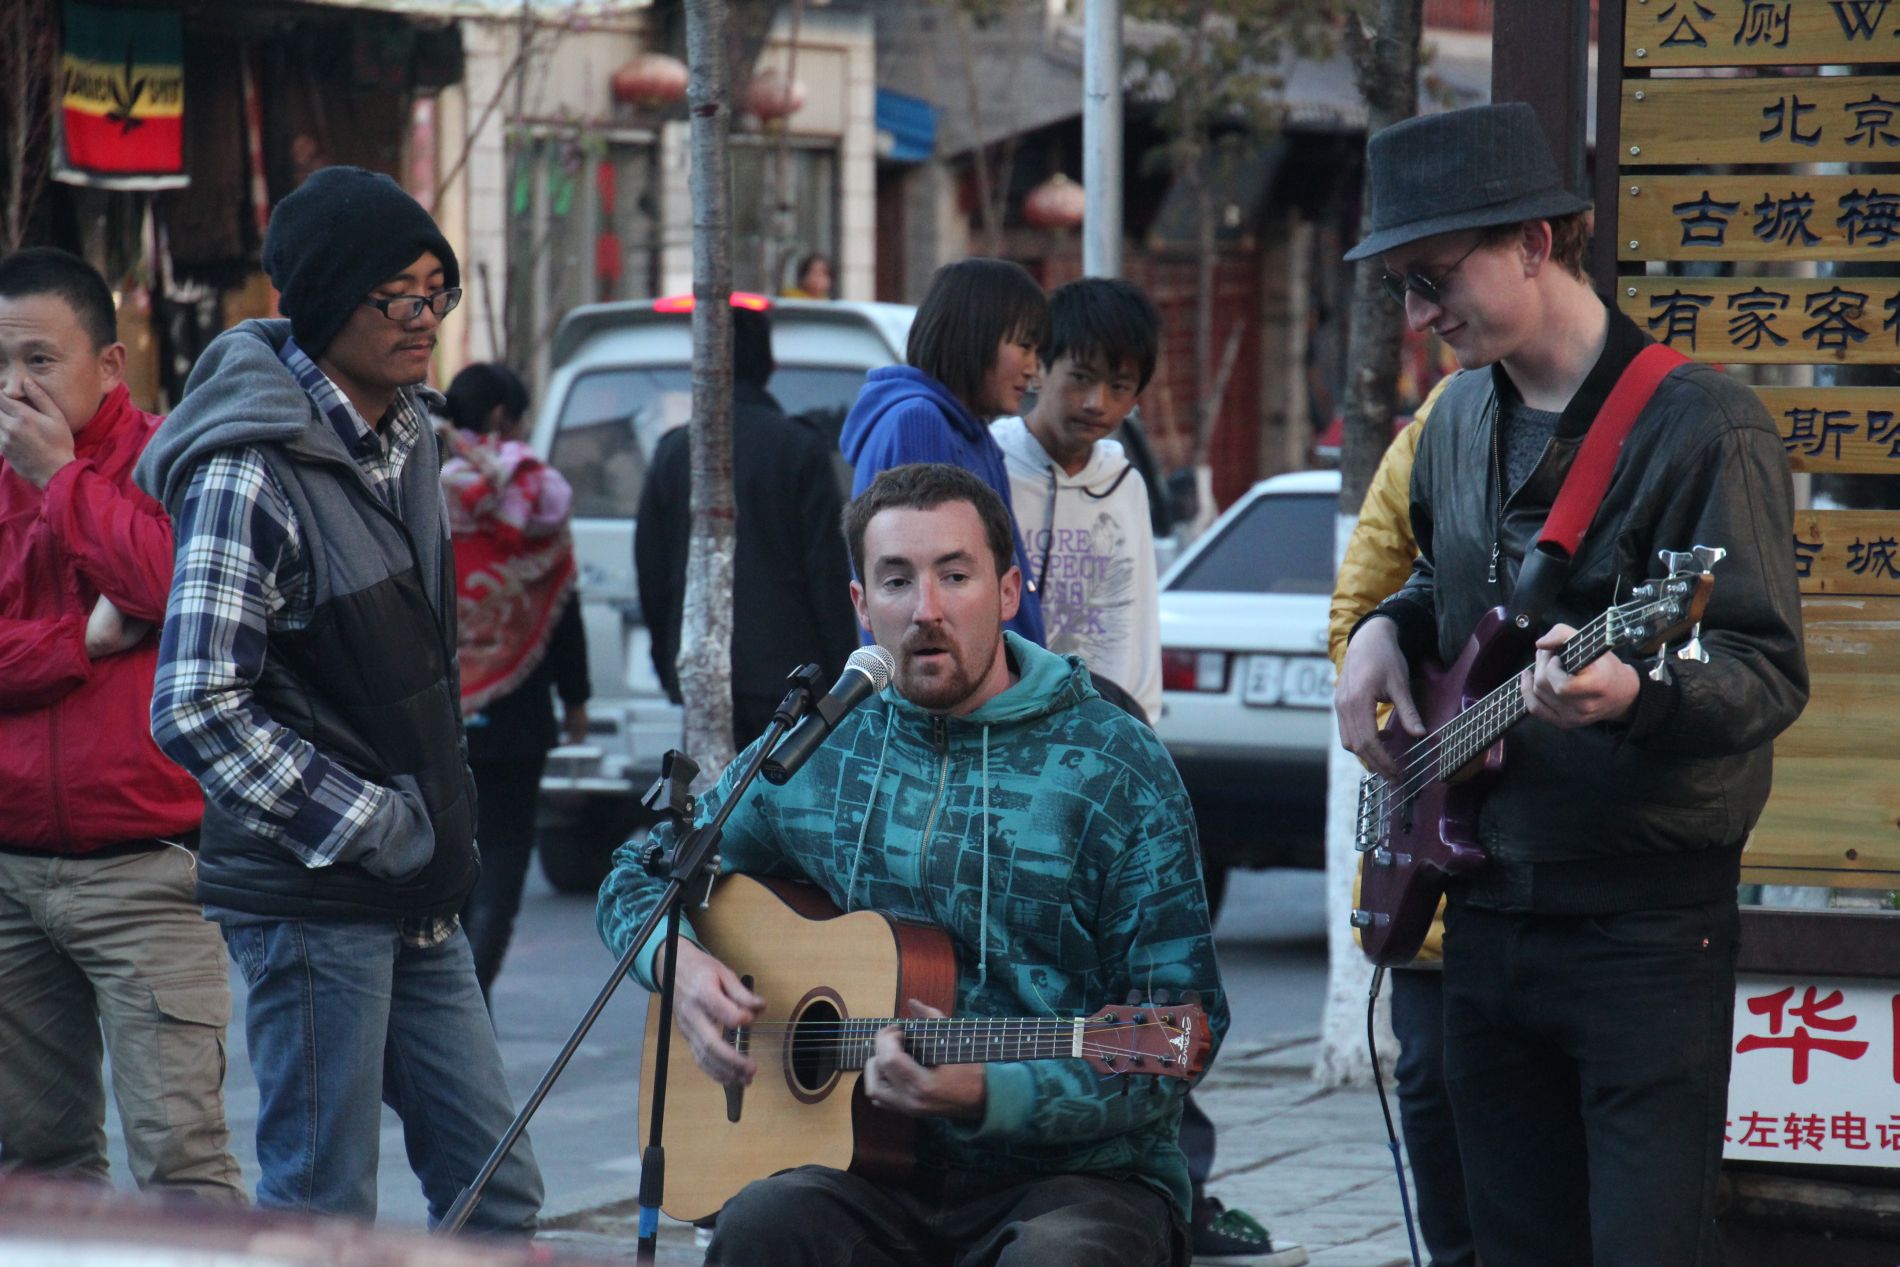 Street musicians play guitars in DàlÇ?, China.